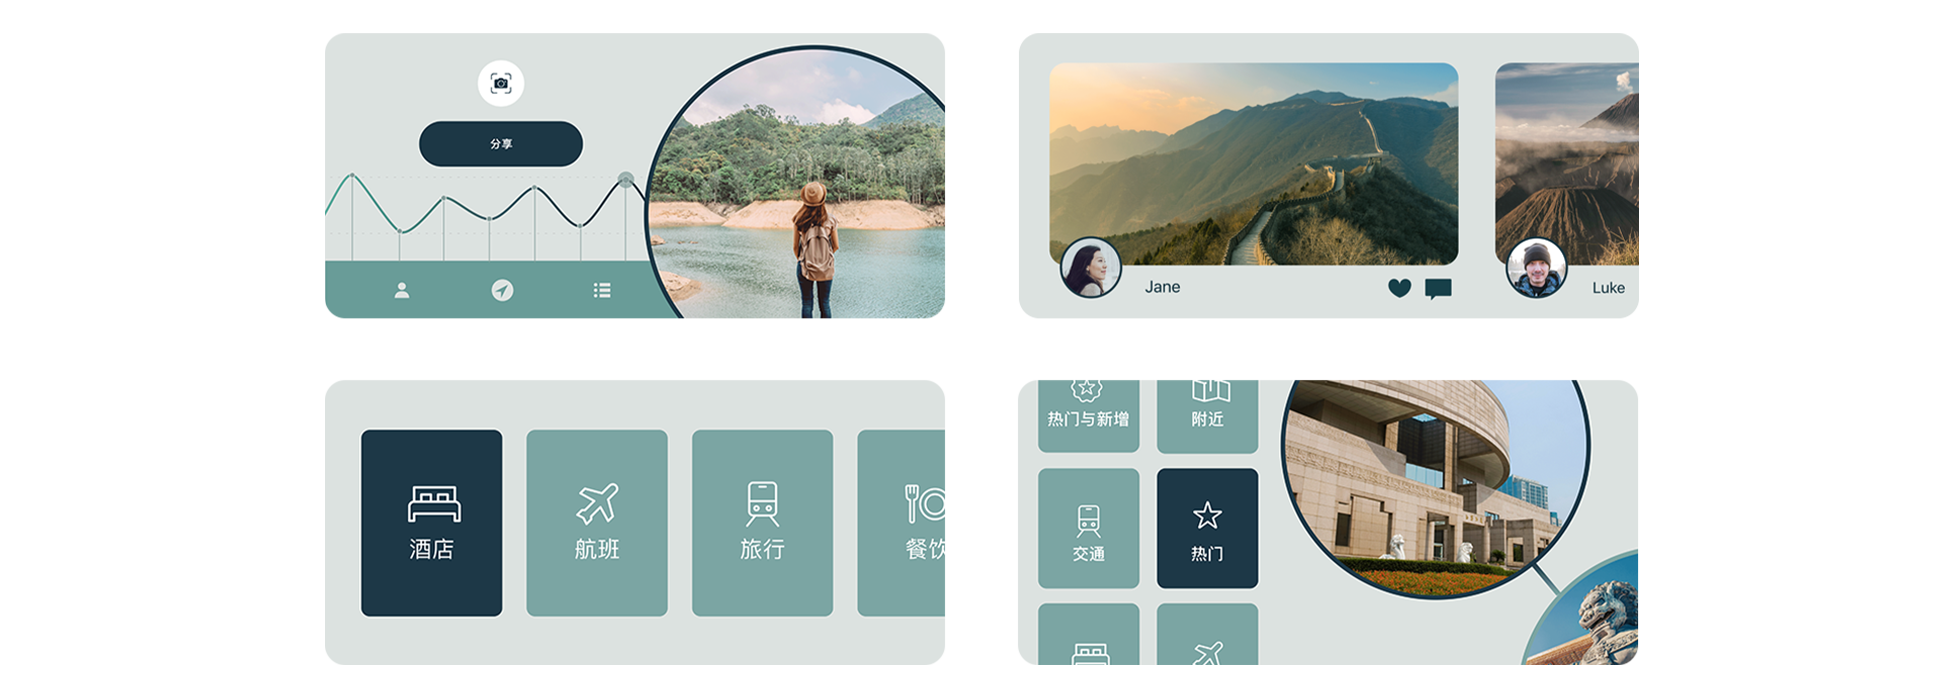 来自示例 app TripTrek 的四张截屏。第一张展示了一个人在凝望水面，旁边是指标线图；第二张展示中国长城的照片，照片下方是名为 Jane 的用户头像；第三张展示四个图文框，上面分别写着“酒店”、“航班”、“旅游”和“餐饮”；第四张展示了六个图文框，其中写着“热门”字样的图文框得到突出显示，该图文框旁边是上海博物馆的图片。